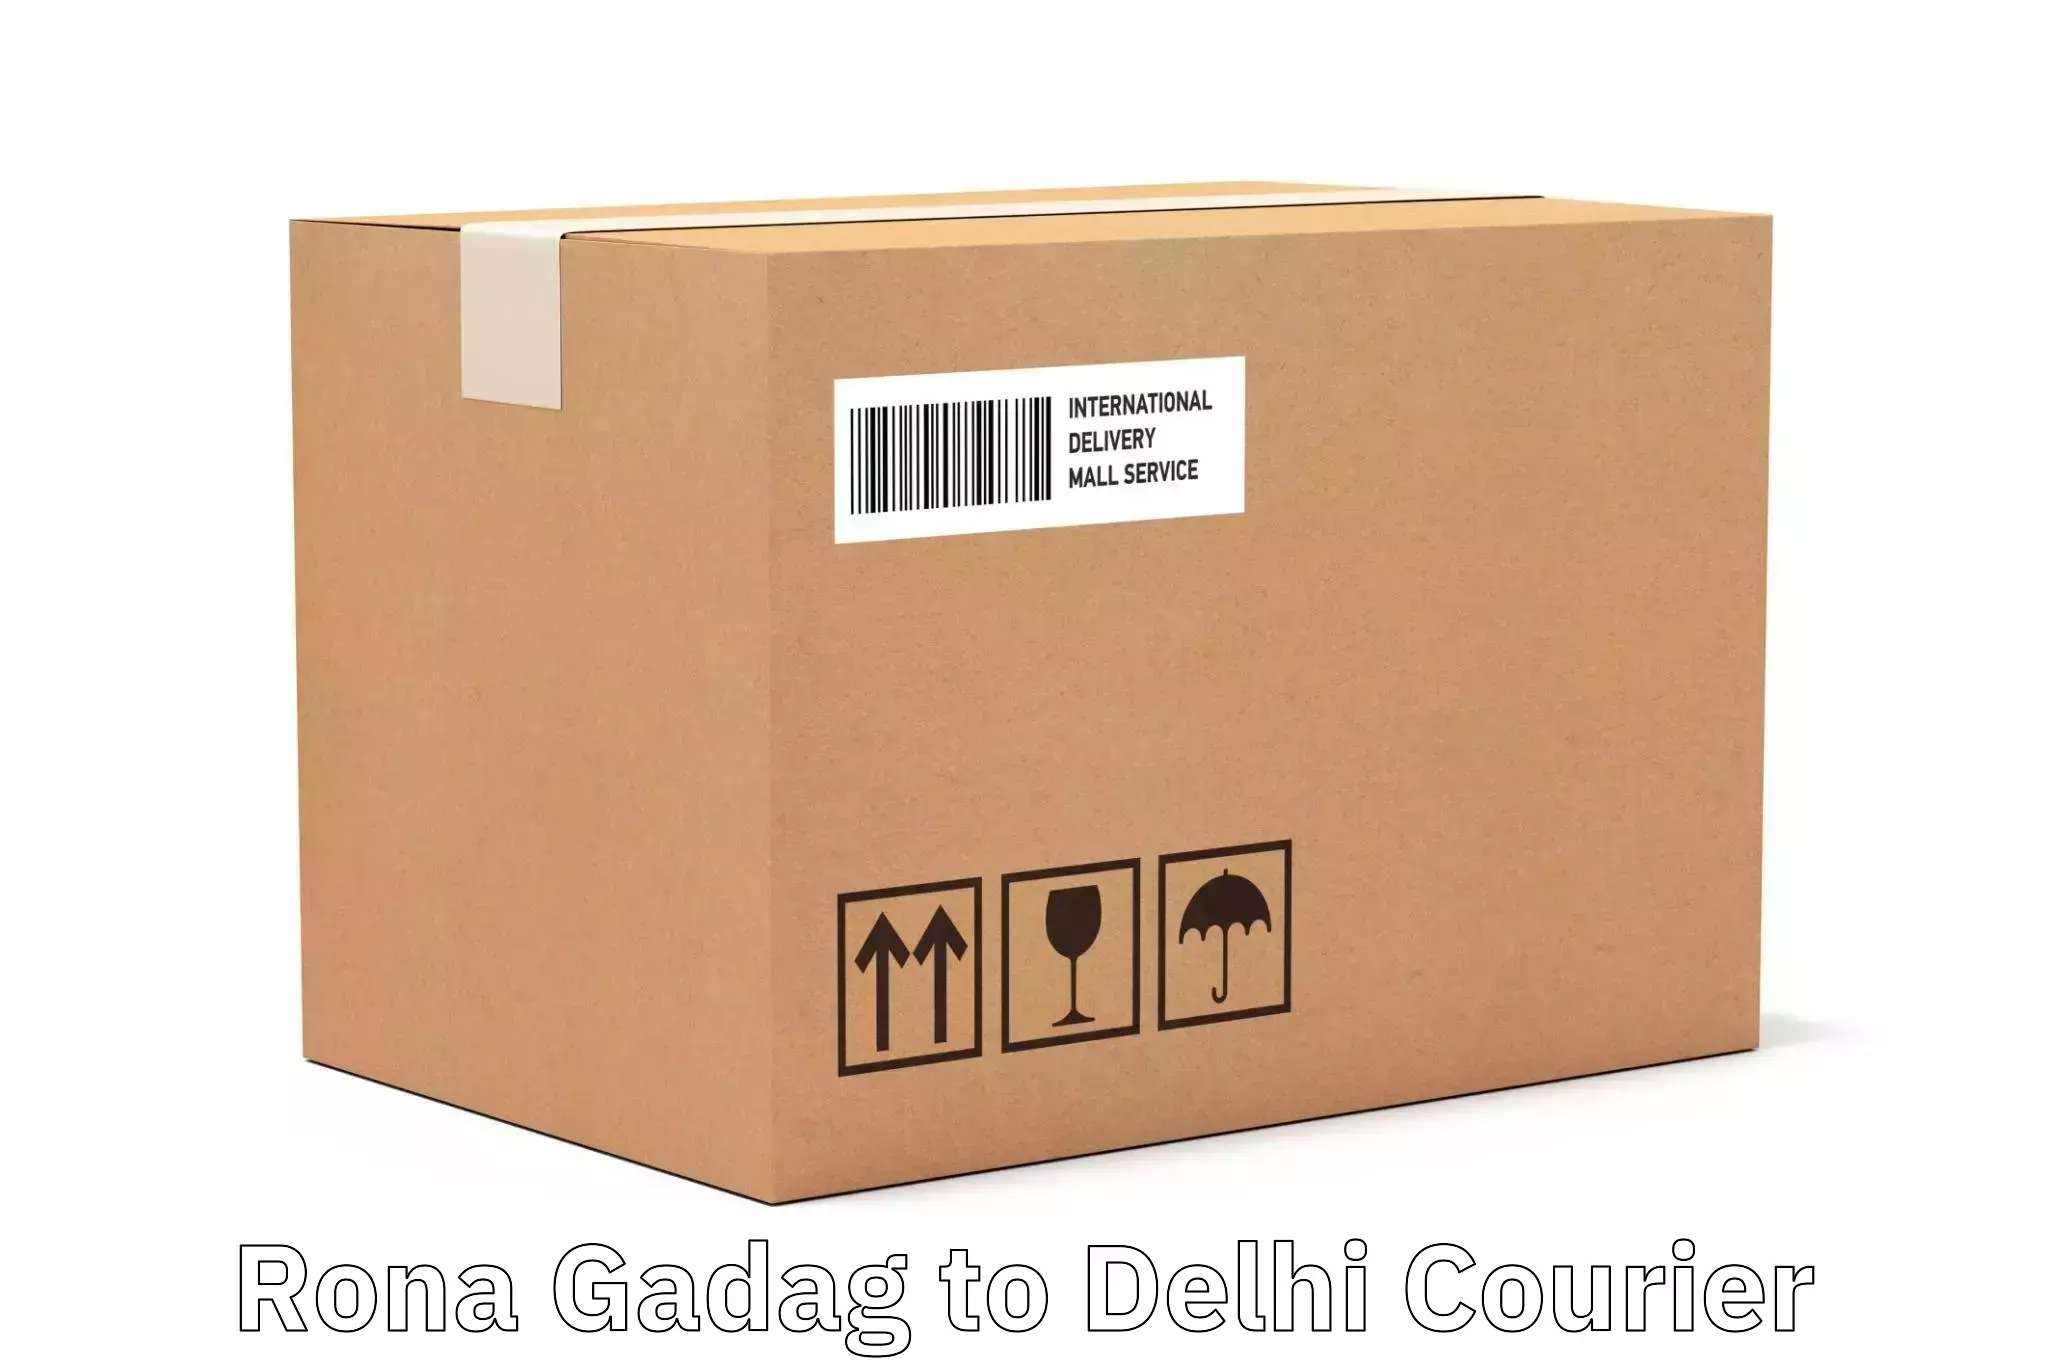 Advanced logistics management Rona Gadag to NIT Delhi